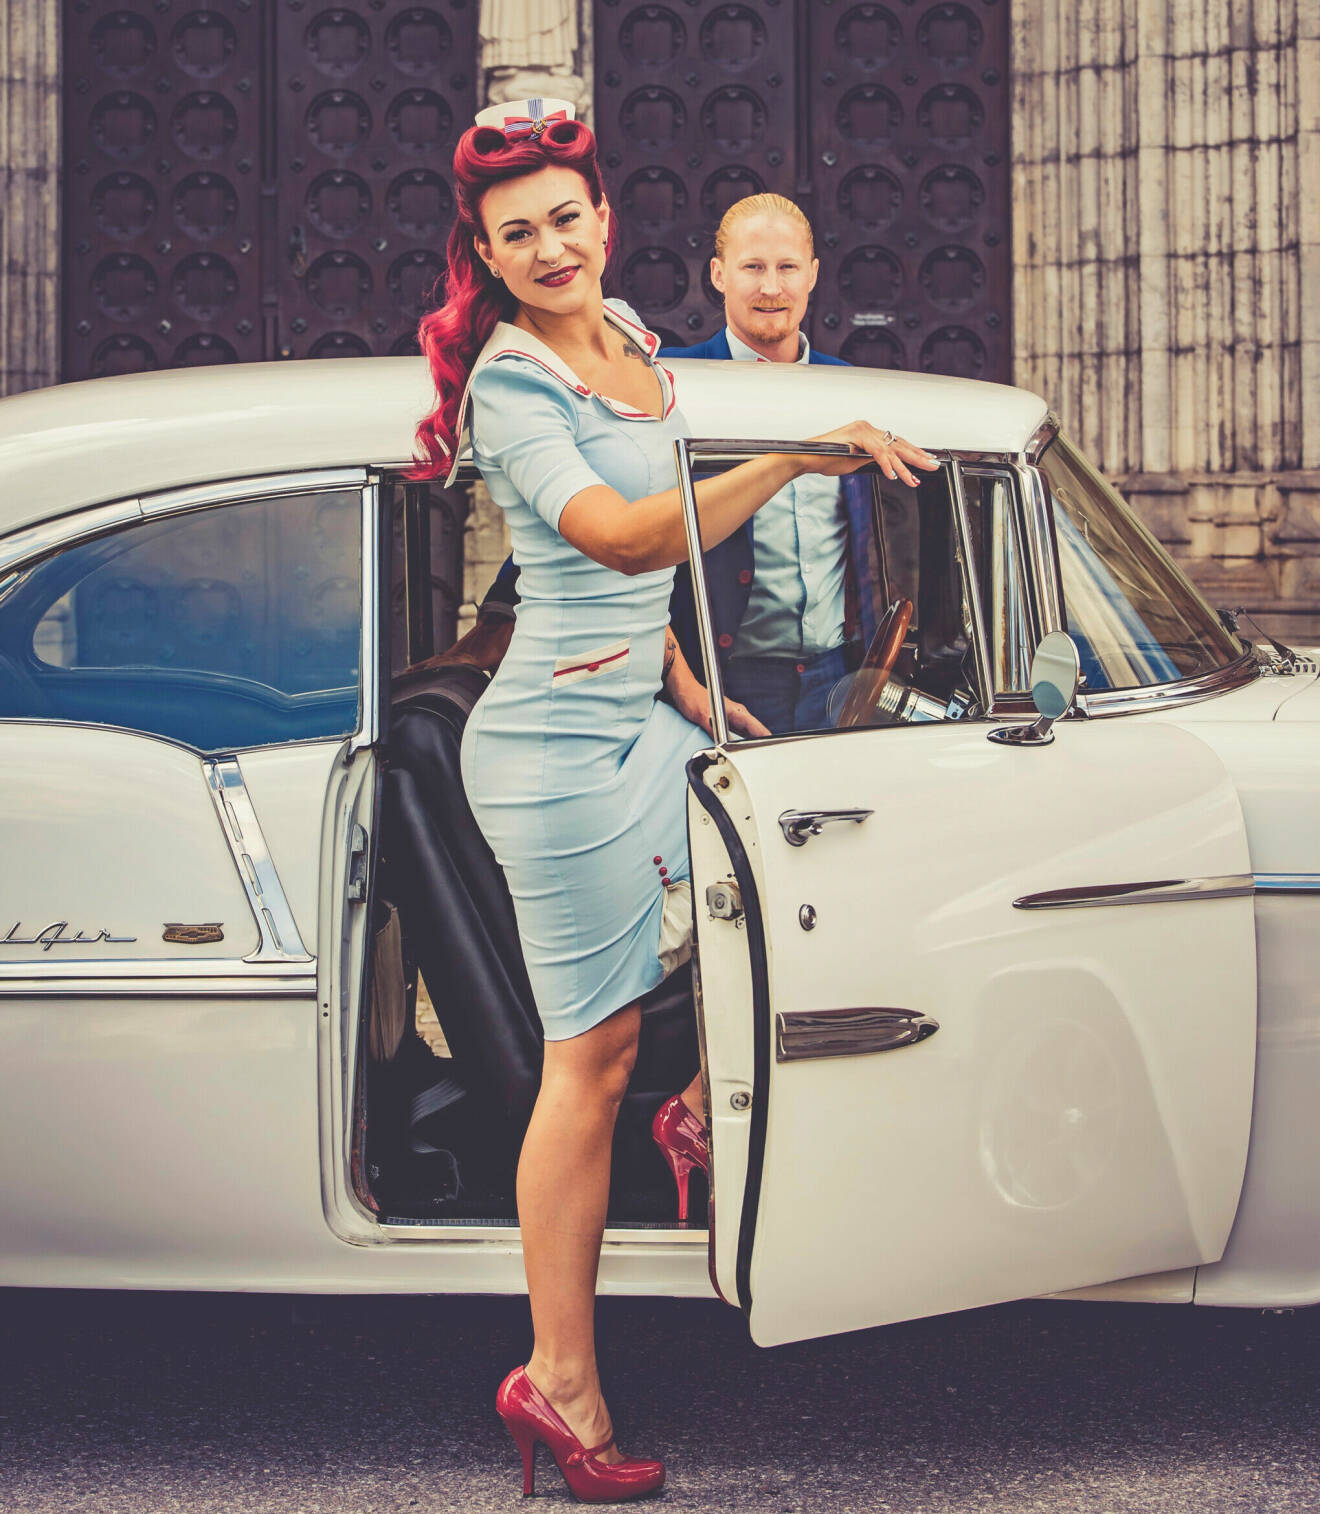 Nygifta Ida i ljusblå klänning kliver in i en vit 50-talsbil, och på andra sidan bilen står maken Henrik i blå kostym.